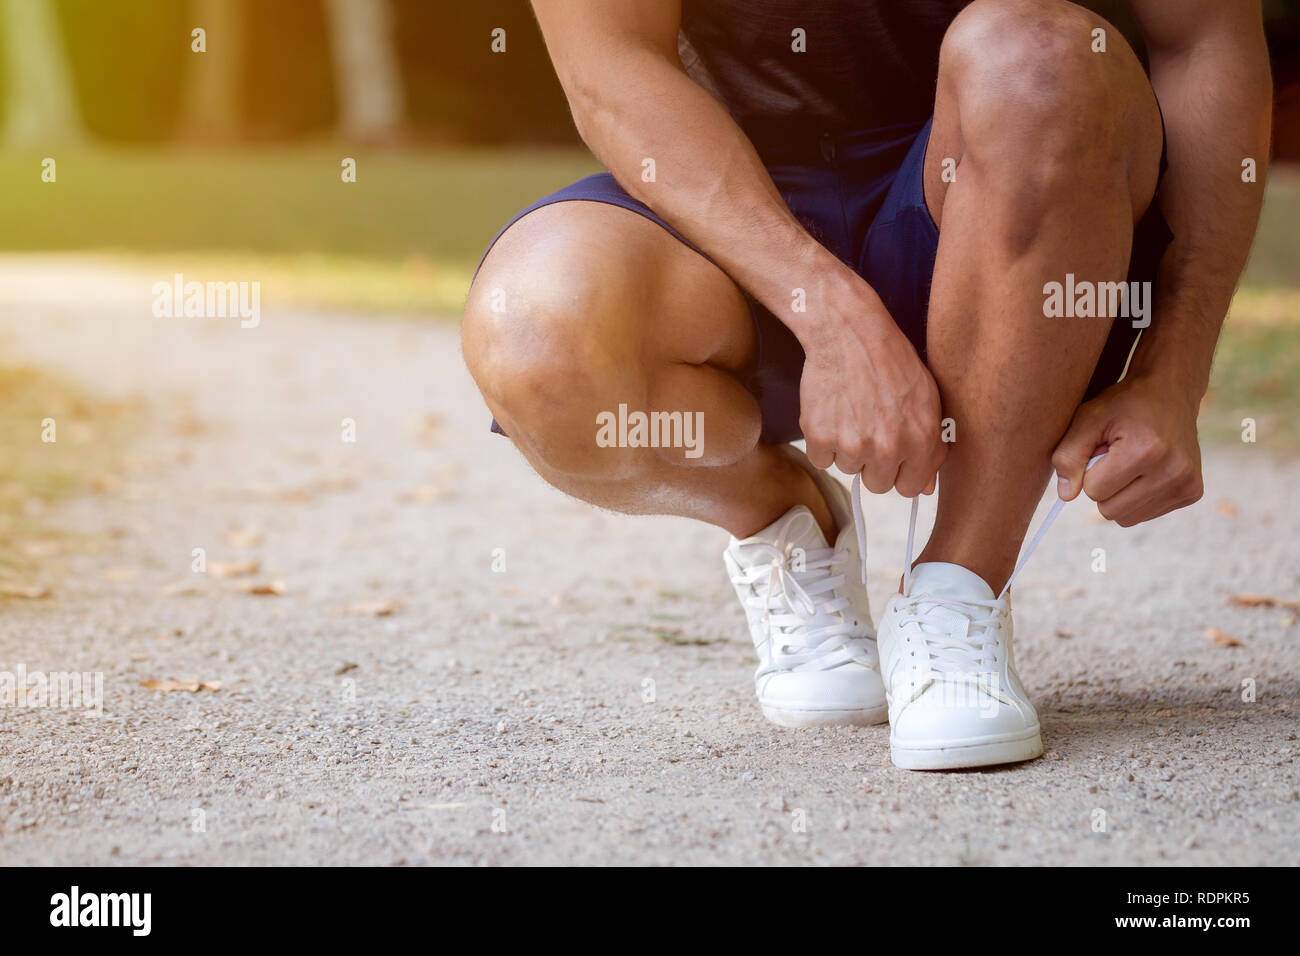 Laccio di legatura scarpe passalacci runner giovane uomo pronto copyspace spazio copia in esecuzione jogging sport fitness training outdoor Foto Stock